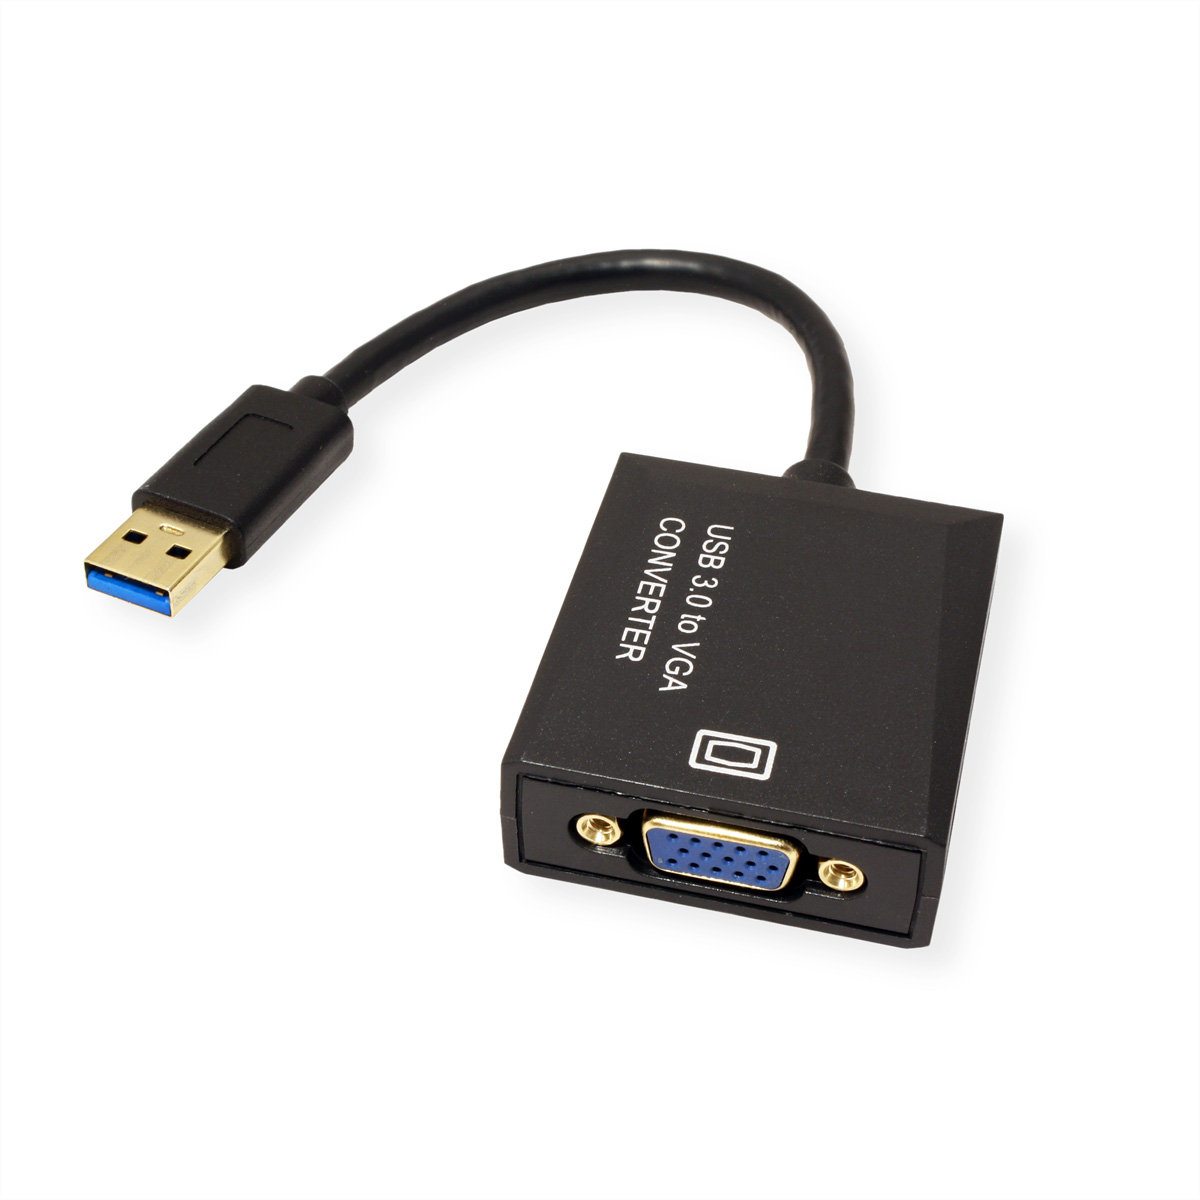 Gen Adapter nach VGA USB Display USB VALUE 3.2 USB-VGA 1 Adapter,